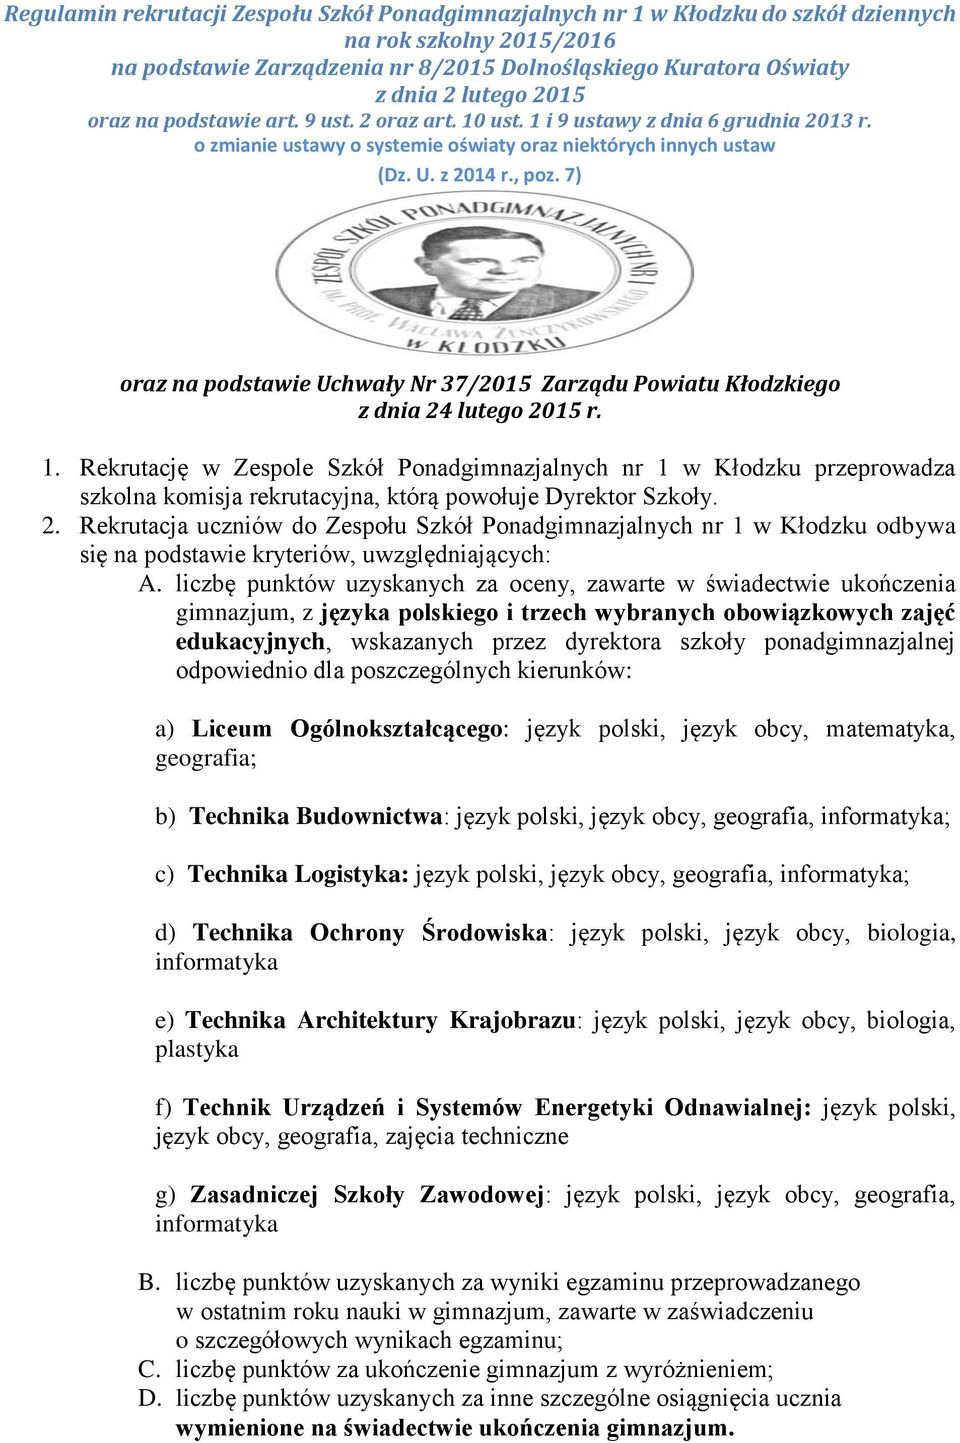 7) oraz na podstawie Uchwały Nr 37/2015 Zarządu Powiatu Kłodzkiego z dnia 24 lutego 2015 r. 1.